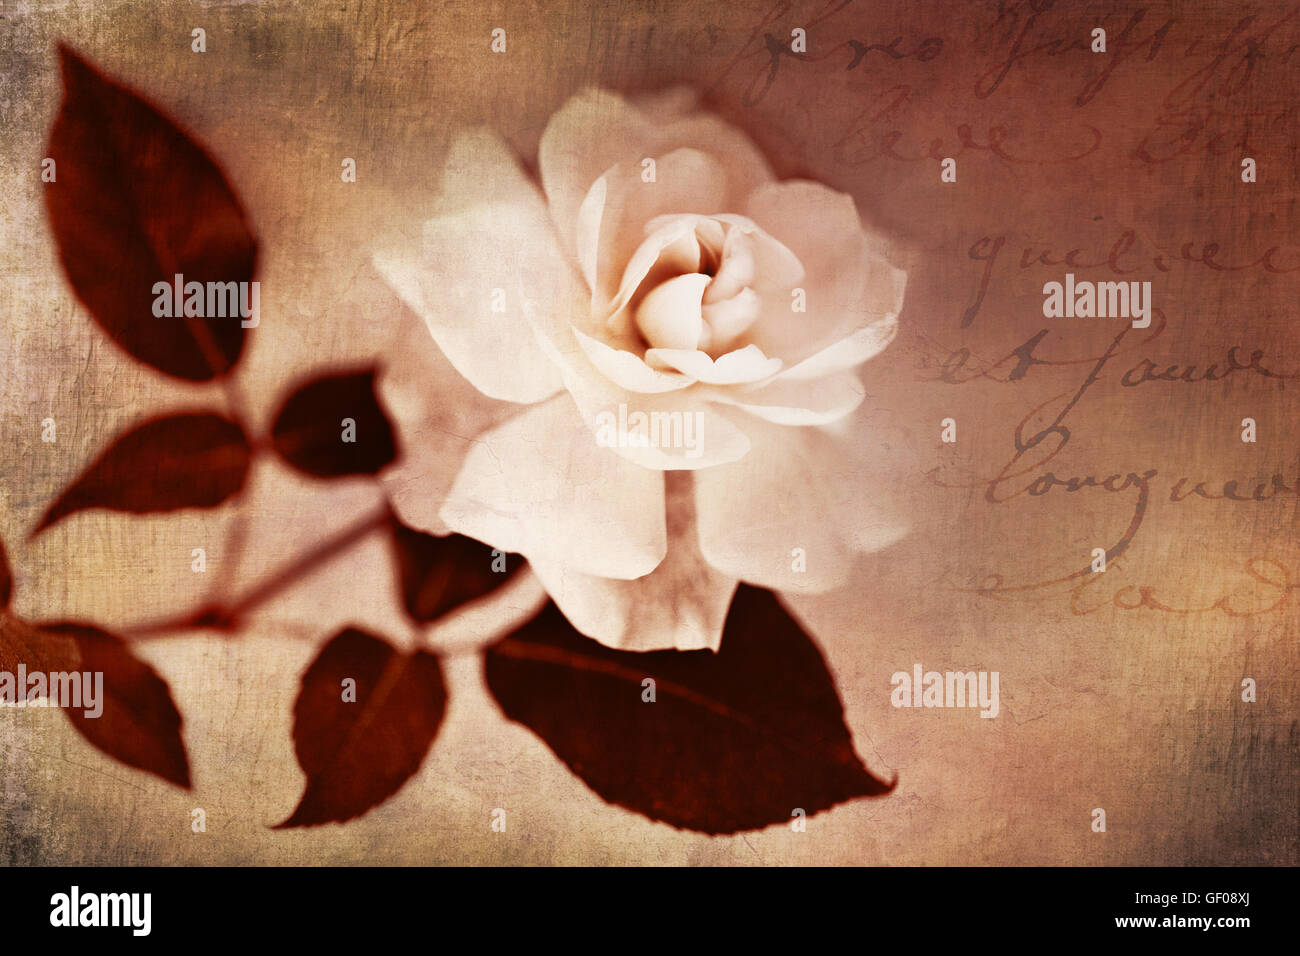 Garten-Rose Blume weiß Floral Sepia mit französischer Text Stockfoto